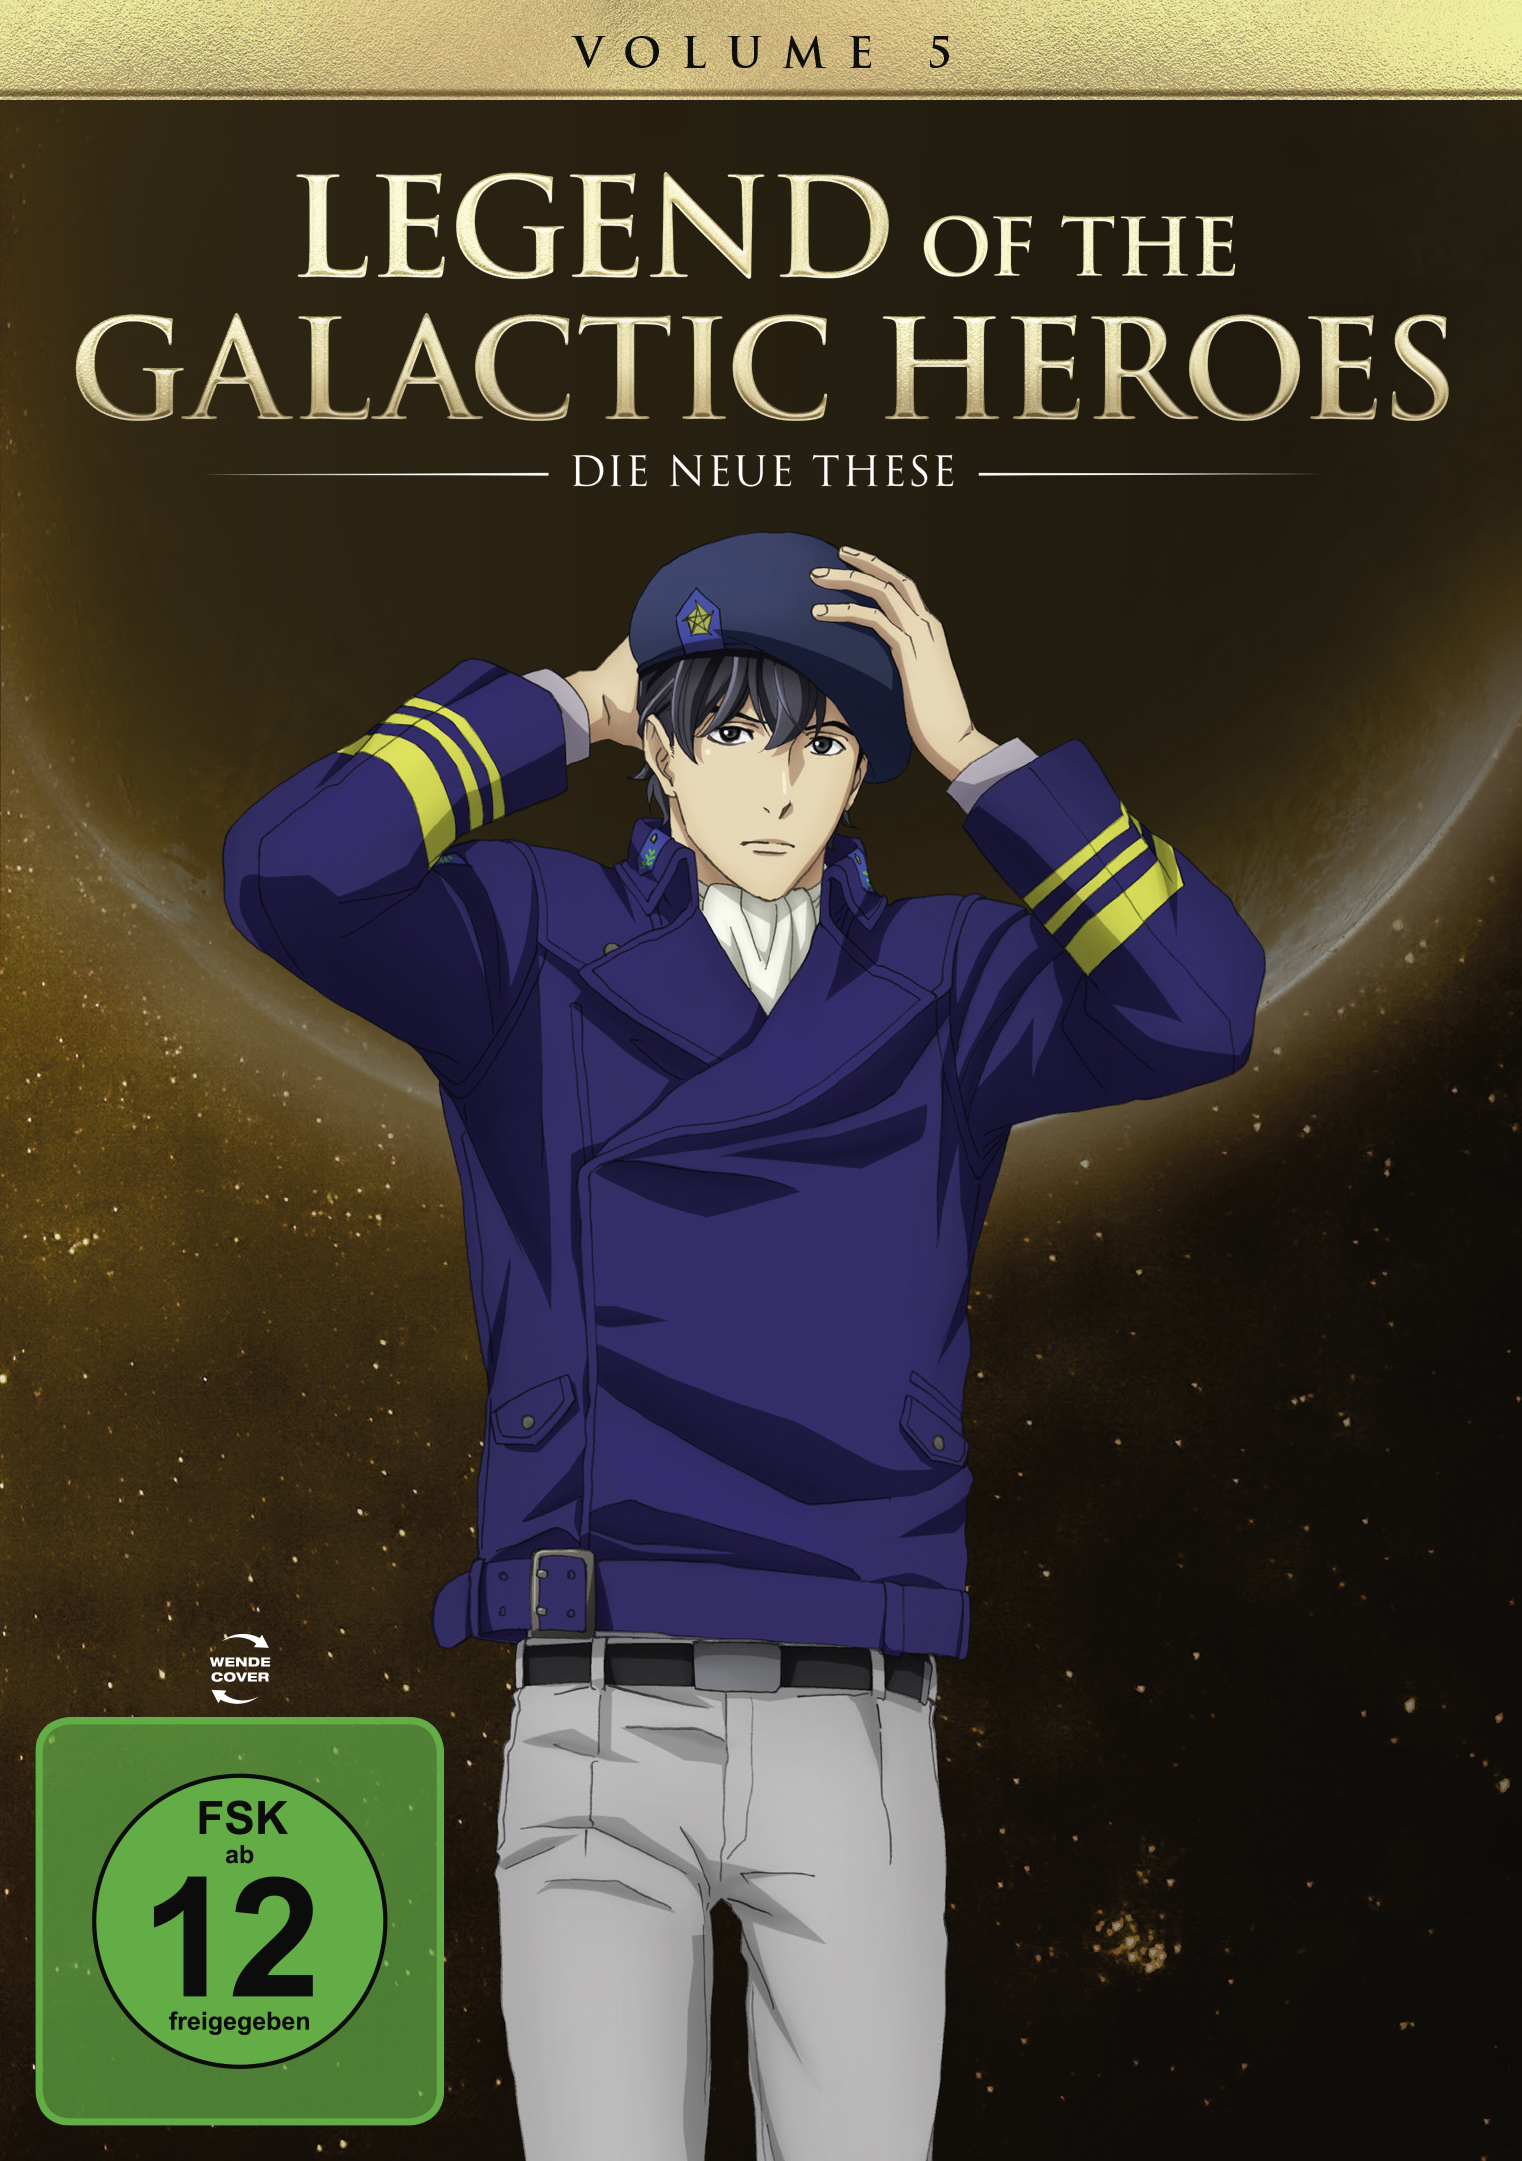 DVD the Galactic 5 Die Heroes: Legend Neue of These Vol.